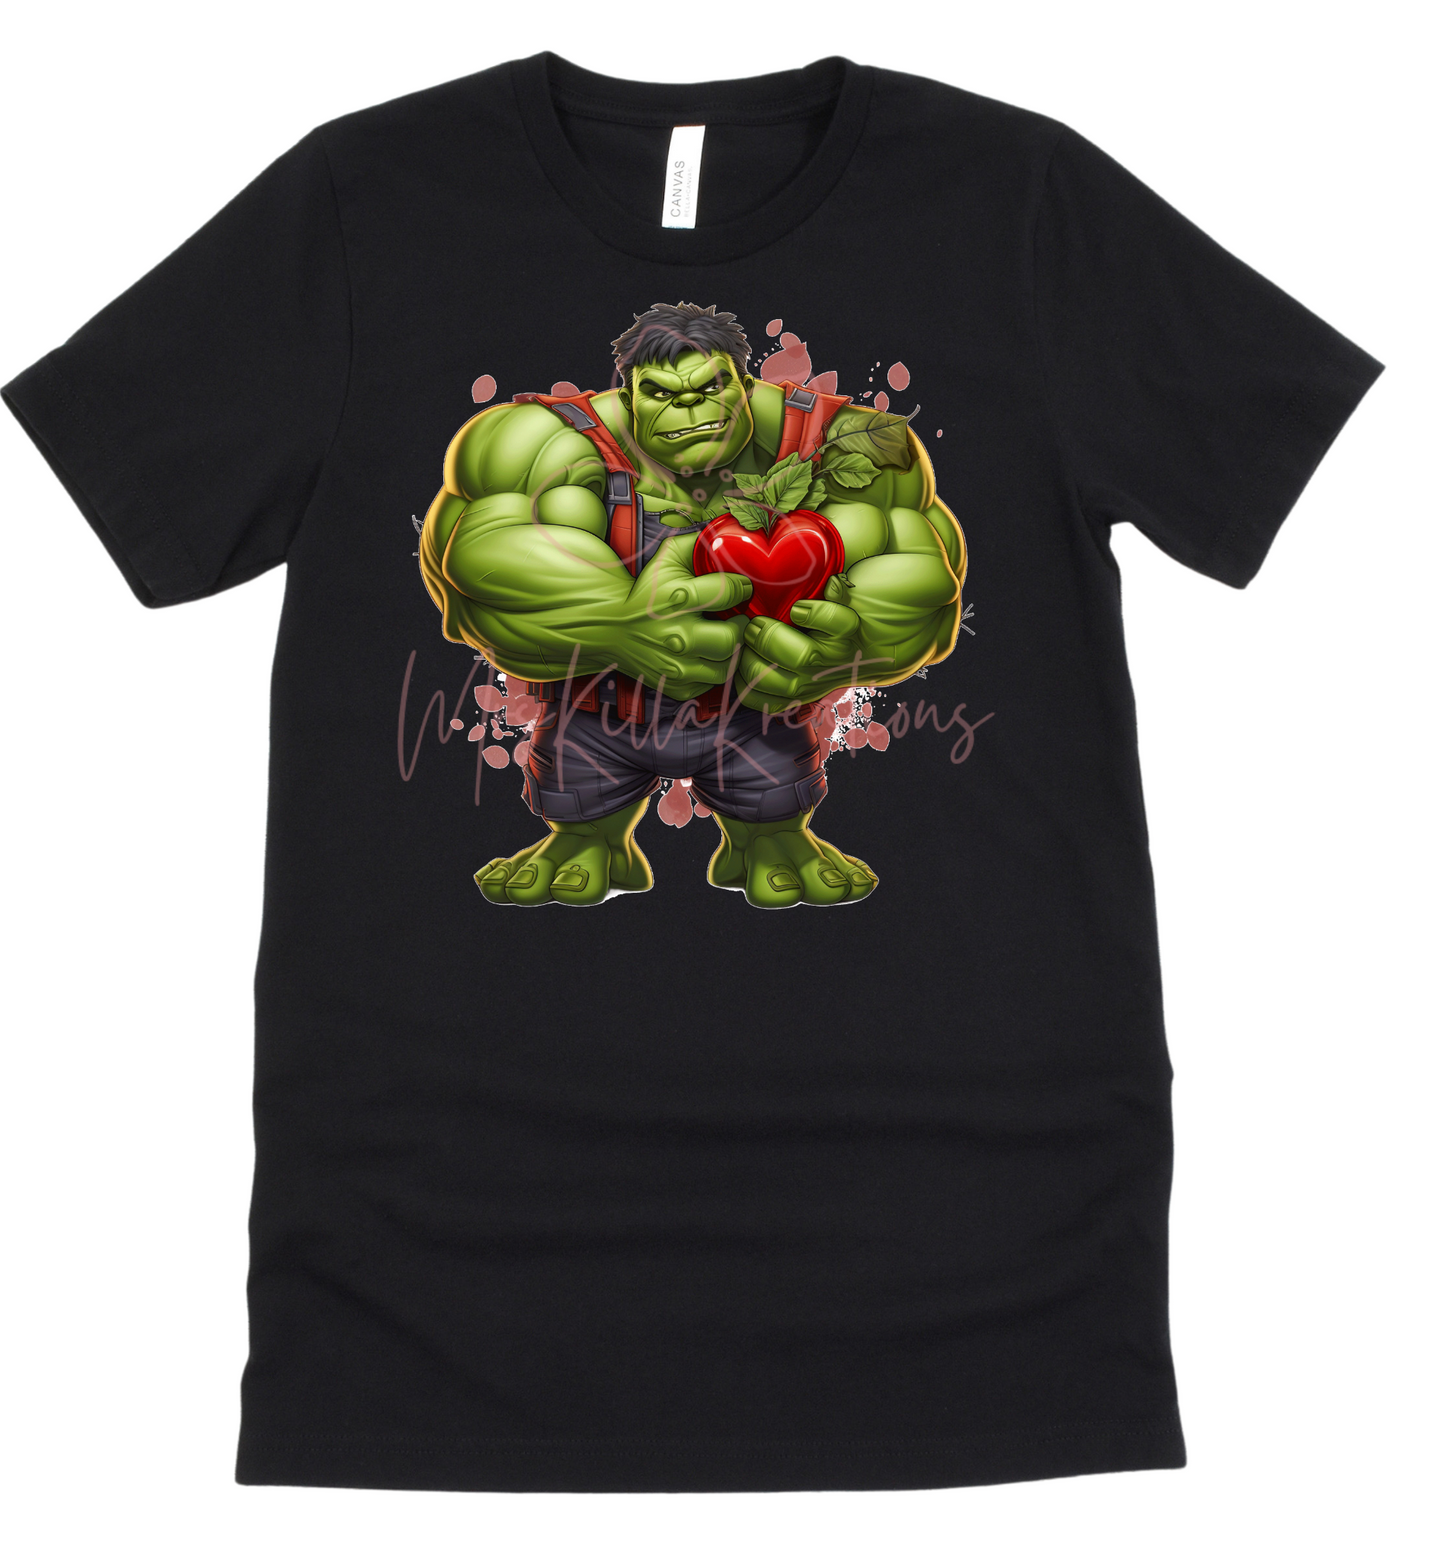 Green buff man T-shirt